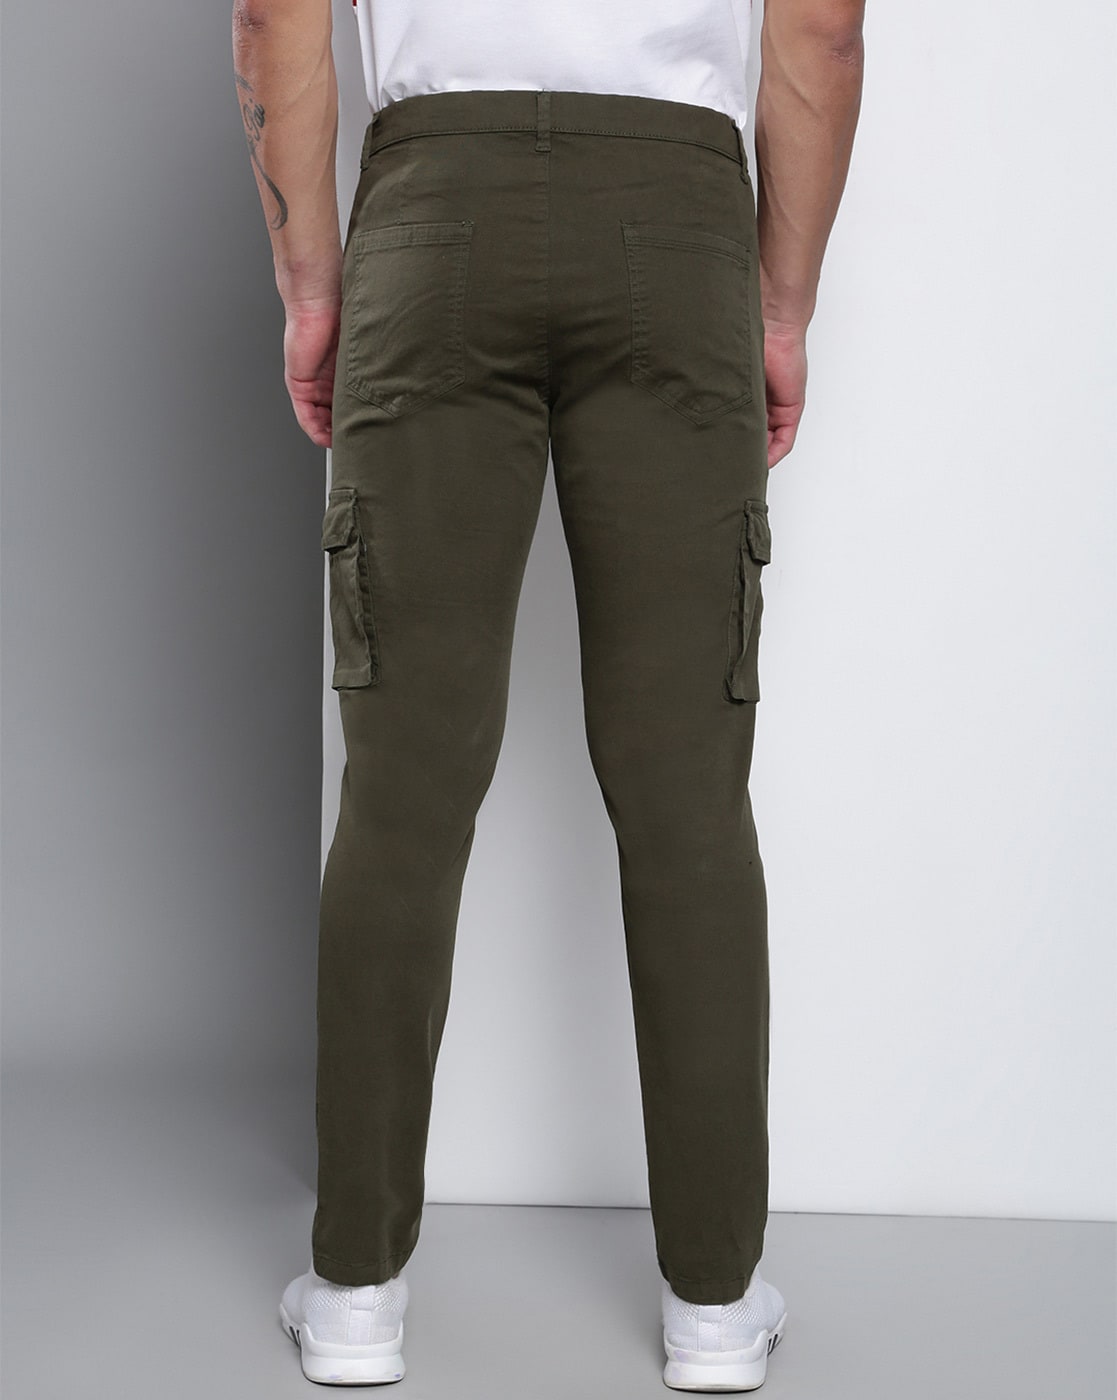 Men's Streetwear Military Tactical Techwear Cargo Pants ☢️ ATLAS 1